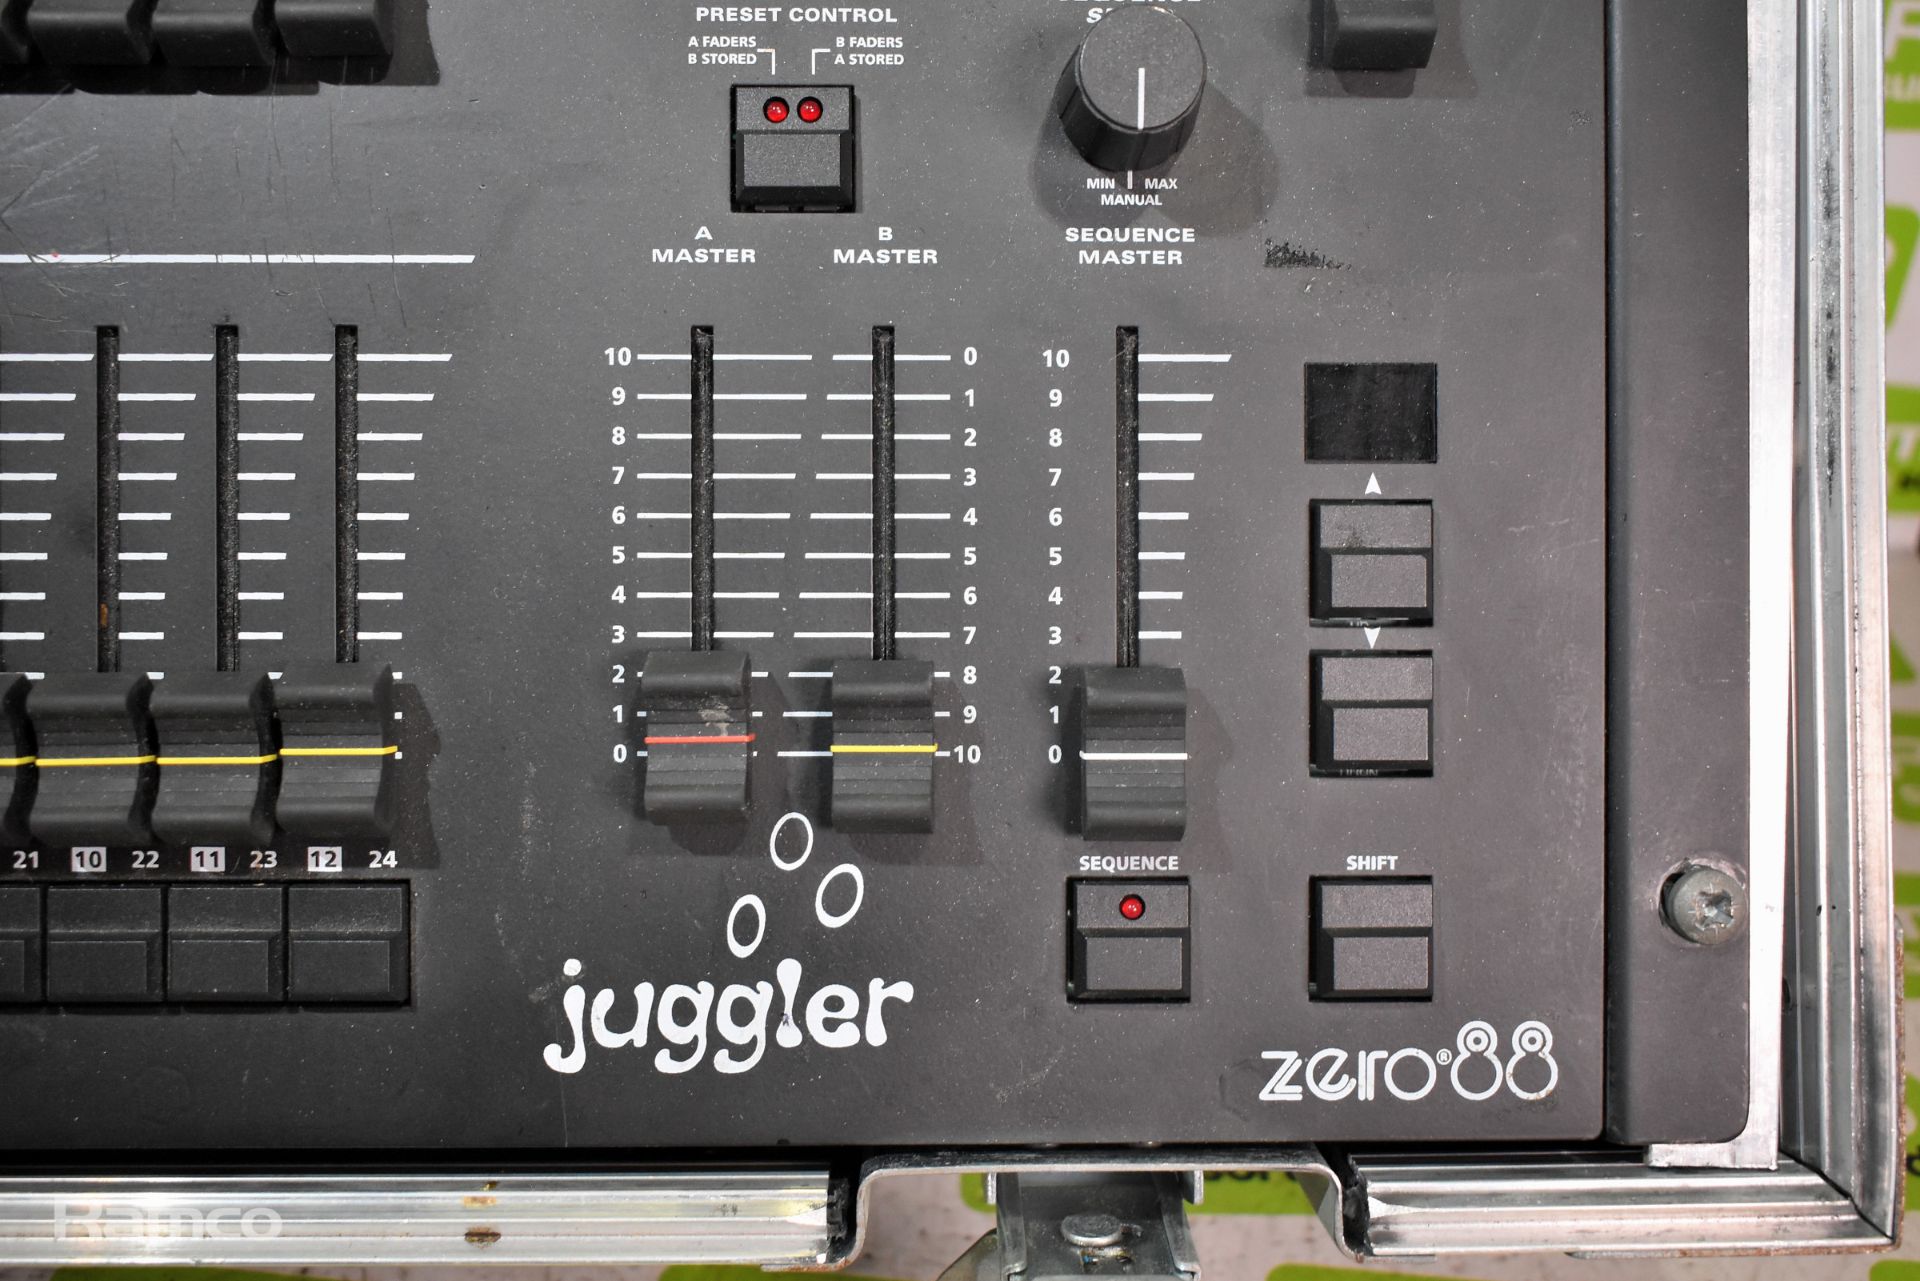 Zero88 Juggler 12/24 lighting control desk in flight case - Image 3 of 5